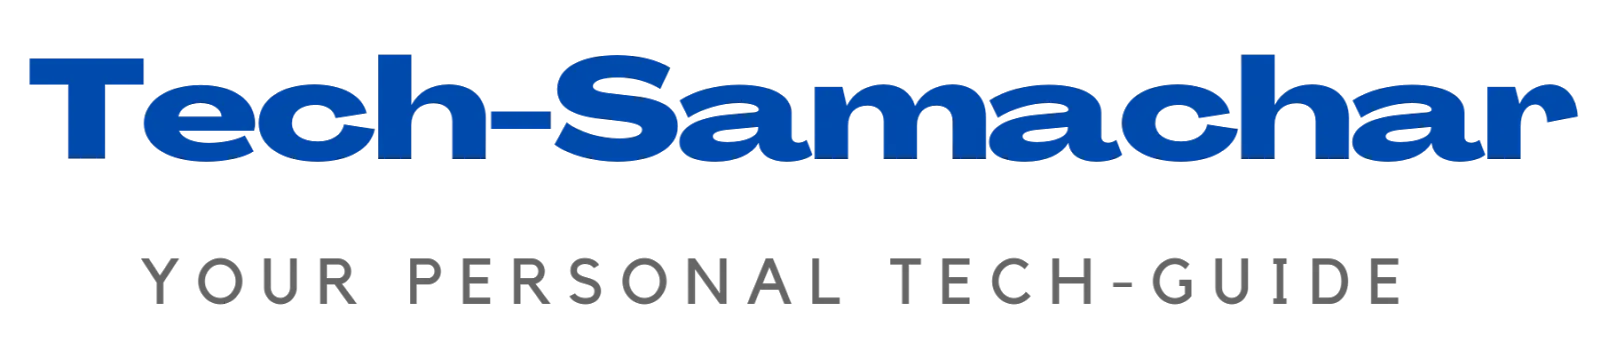 Tech Samachar (Online Hindi Tech Blog.)